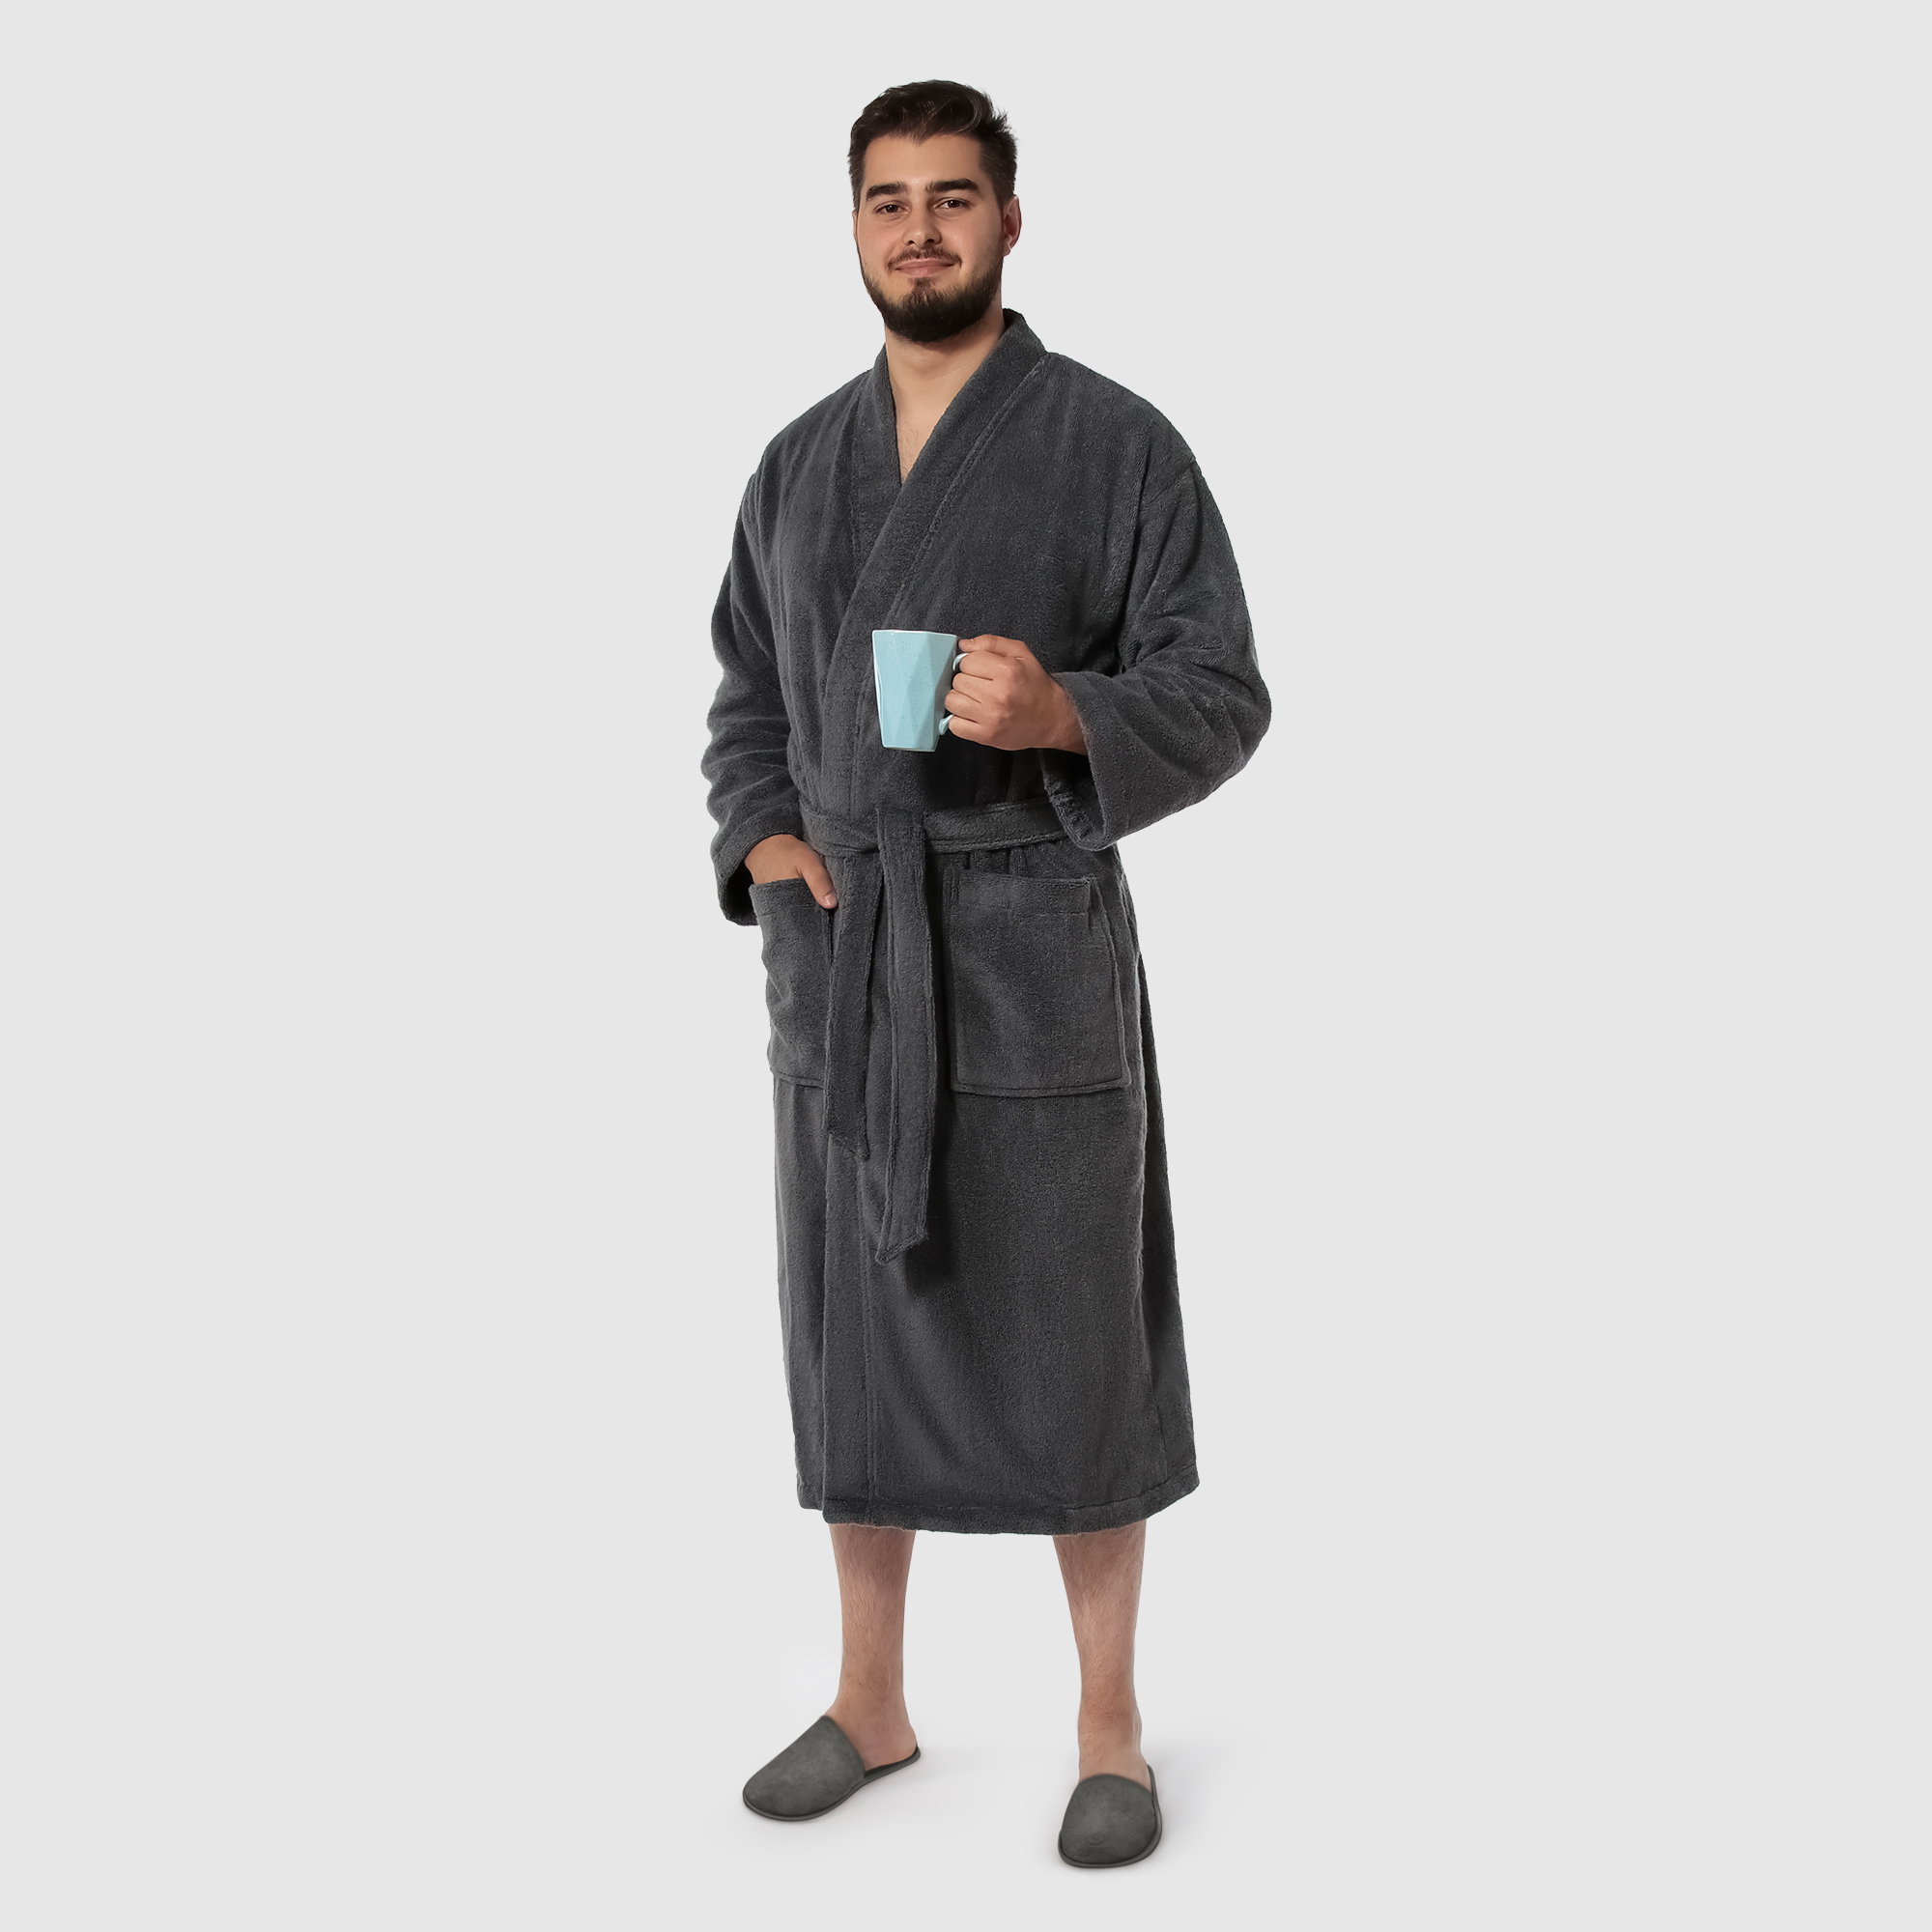 Мужской халат Maisonette Parla тёмно-серый L халат мужской asil sauna brown xl махровый с капюшоном